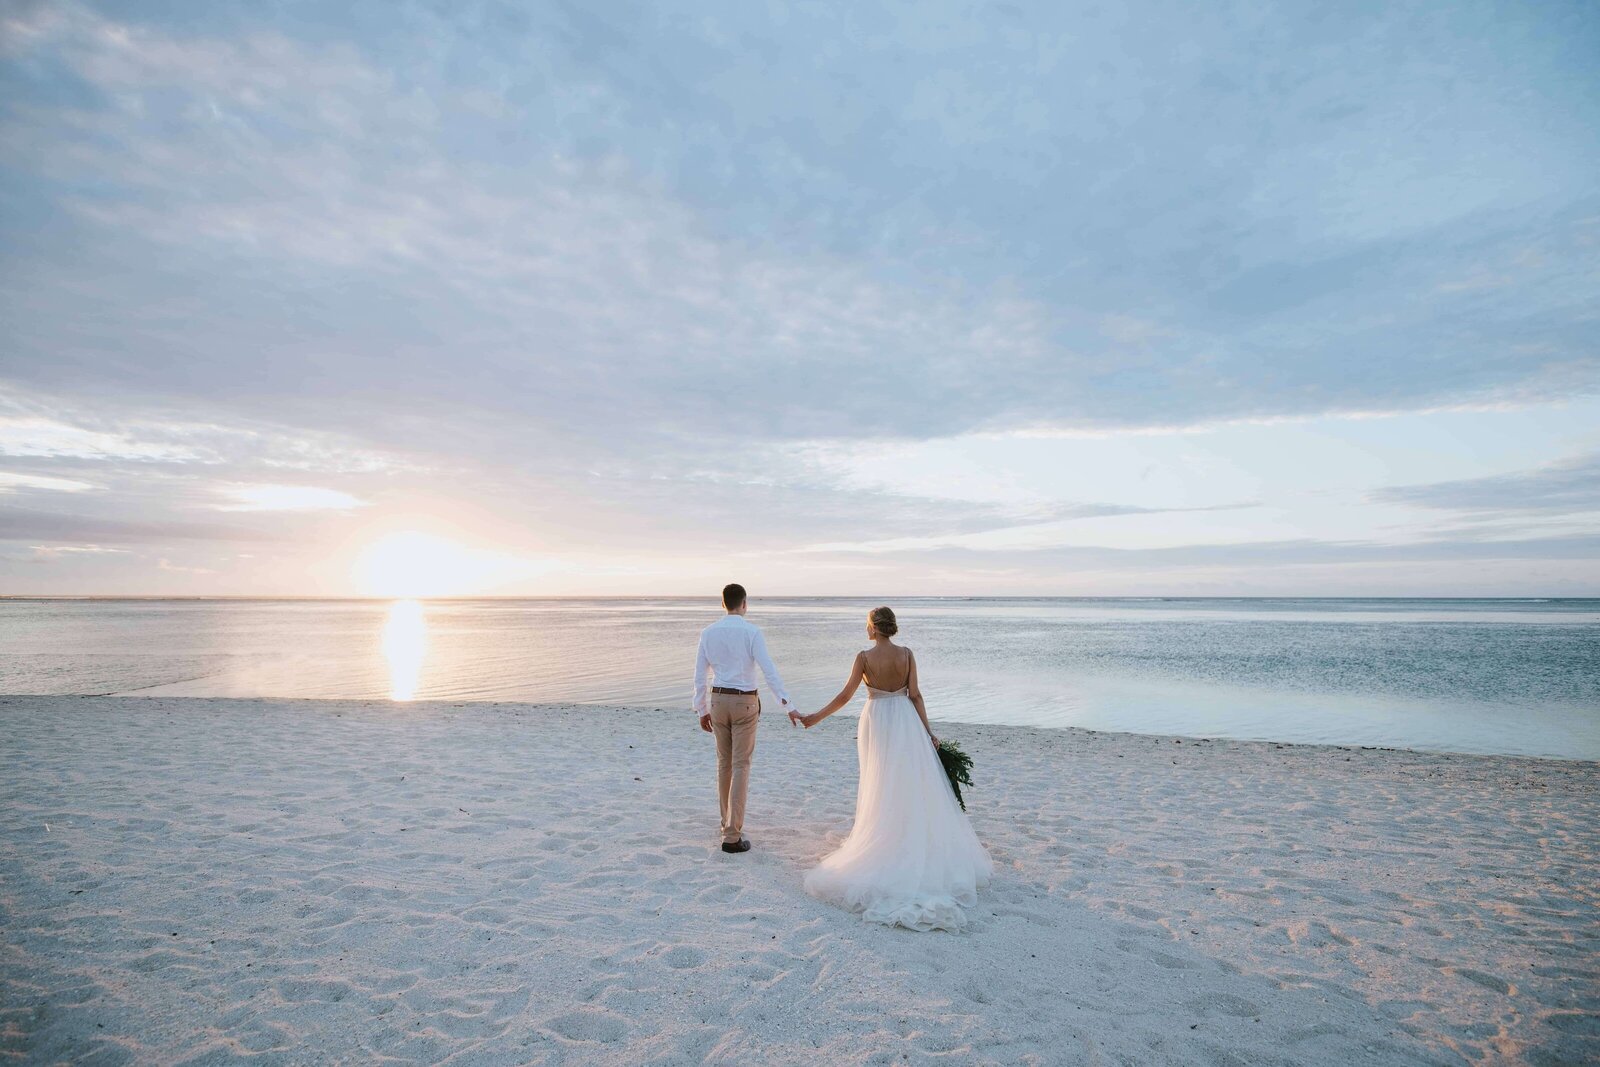 Legendary-World-Travel-by Karen-Destination-Wedding-Planner-Wedding-on-beach-couple